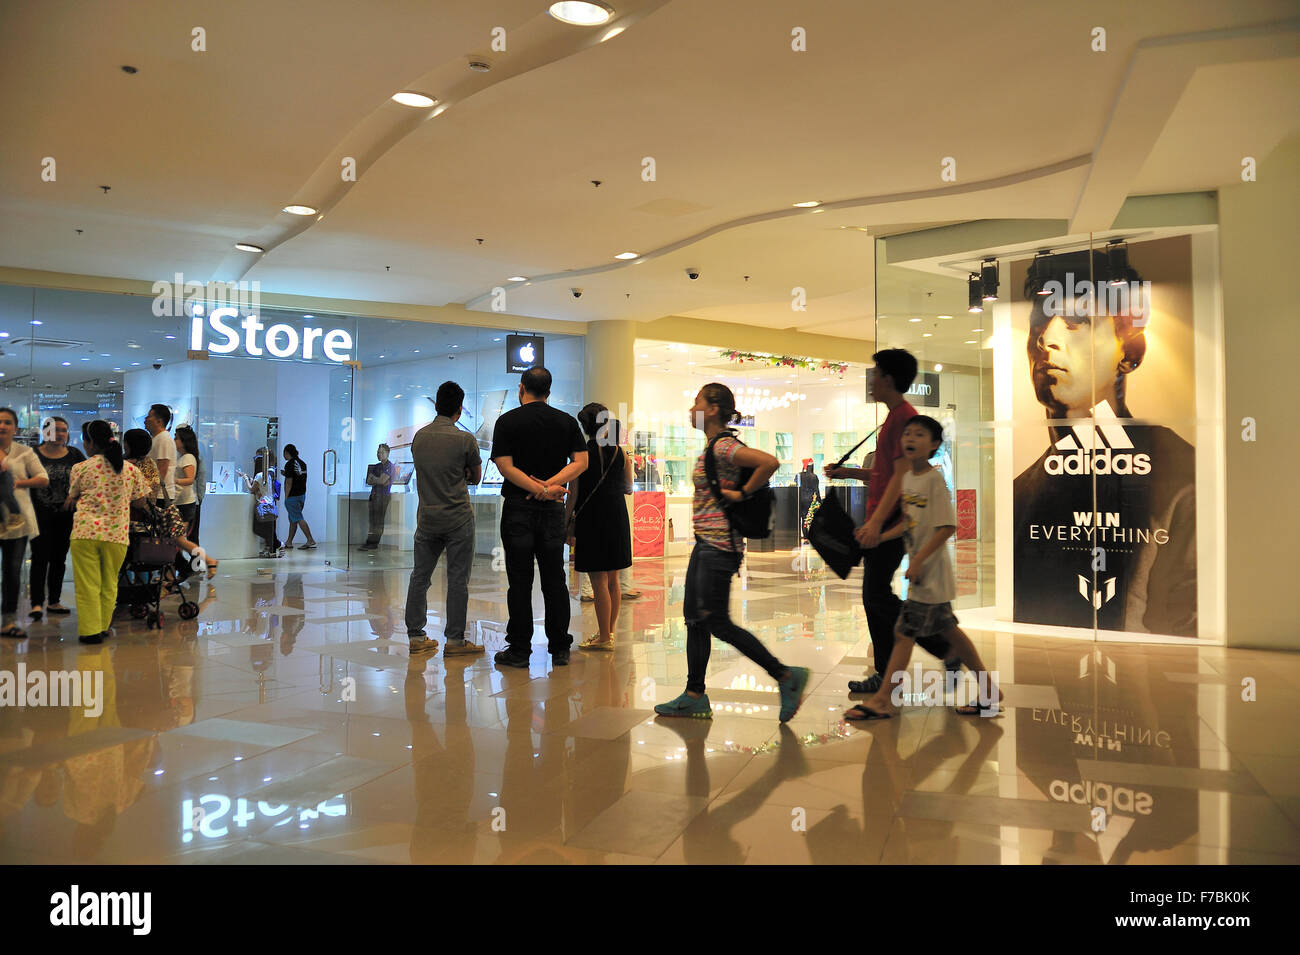 Ayala Center Cebu mit iStore und Adidas Geschäfte Philippinen Stockfoto